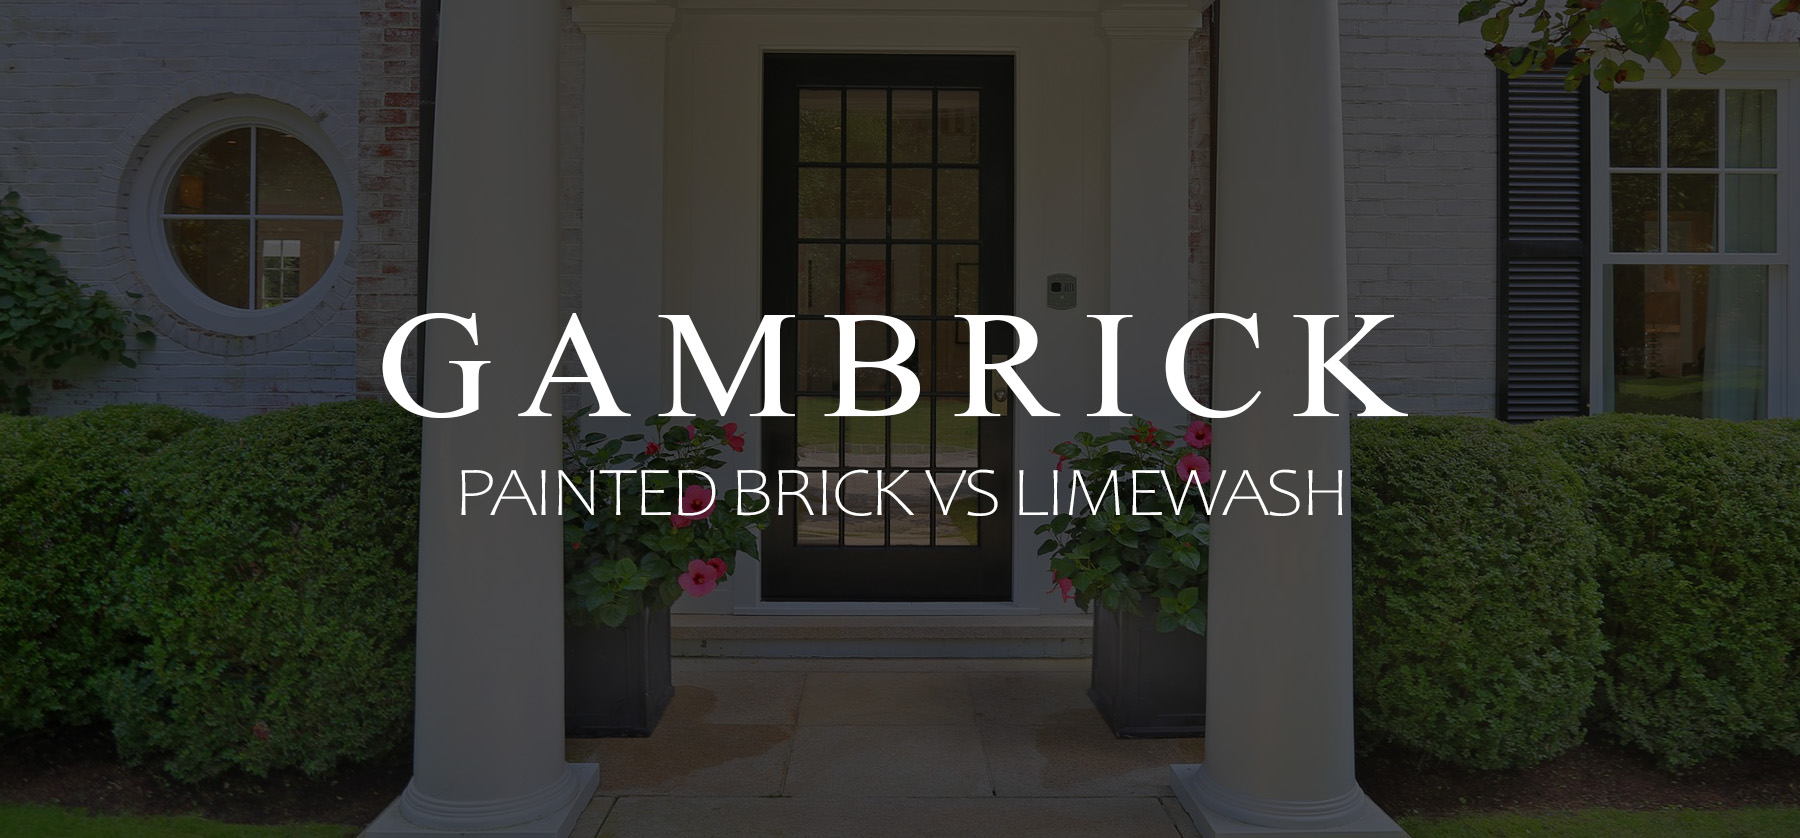 Painted Brick Vs Limewash | Which Method Is Best